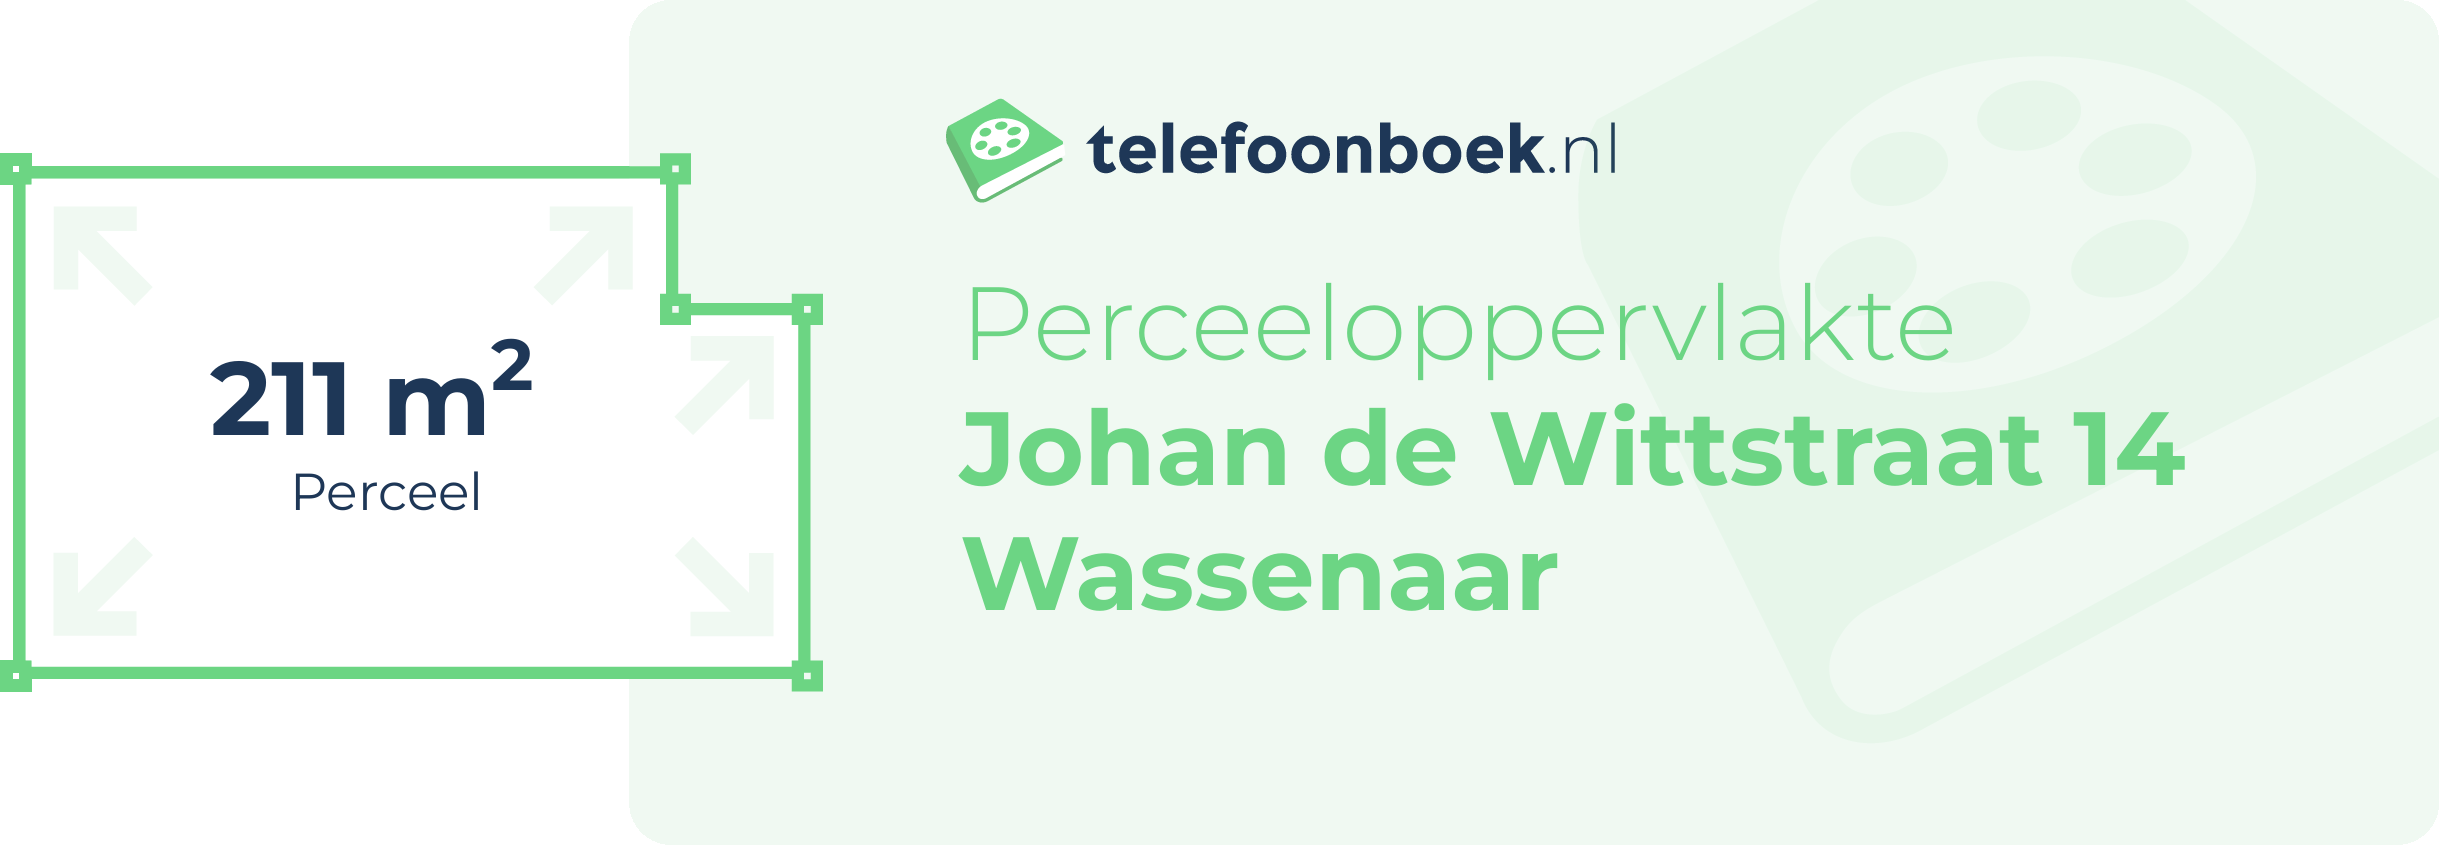 Perceeloppervlakte Johan De Wittstraat 14 Wassenaar